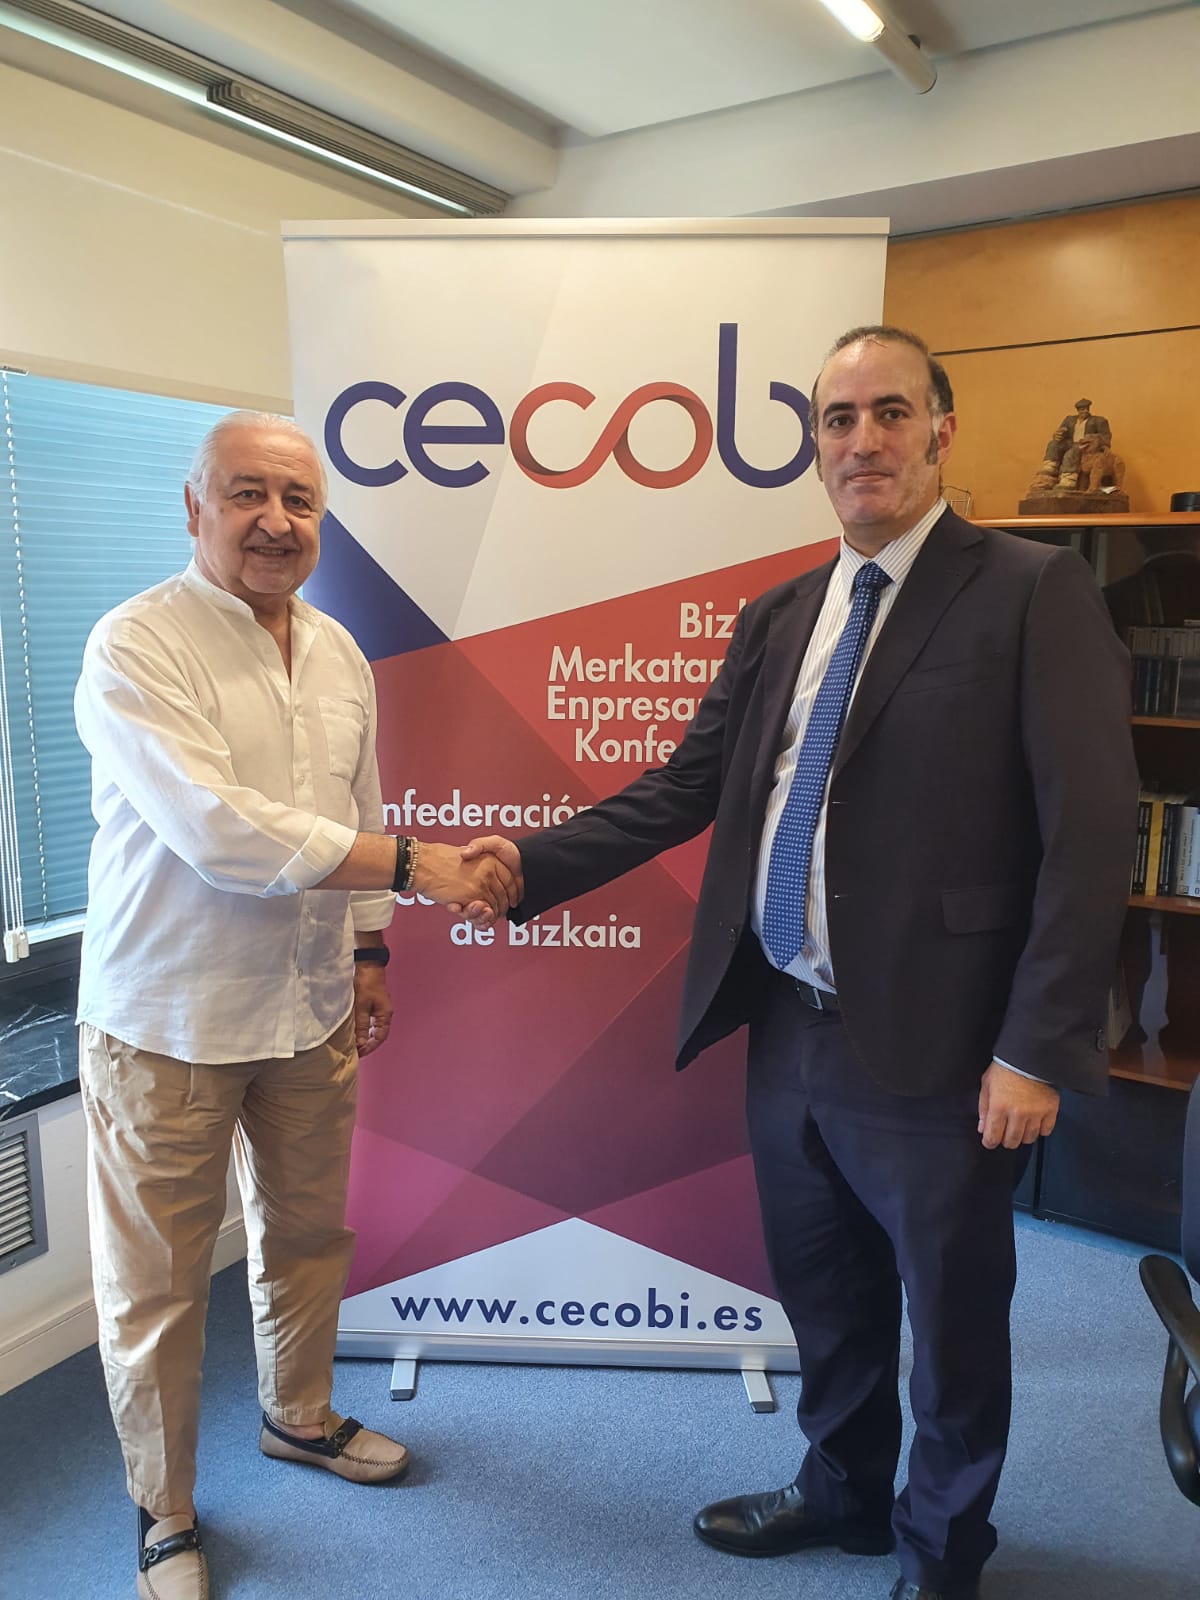 CECOBI cierra un acuerdo con Kontulan, firma especialidad en asesoramiento fiscal, jurídico, mercantil, laboral y contable